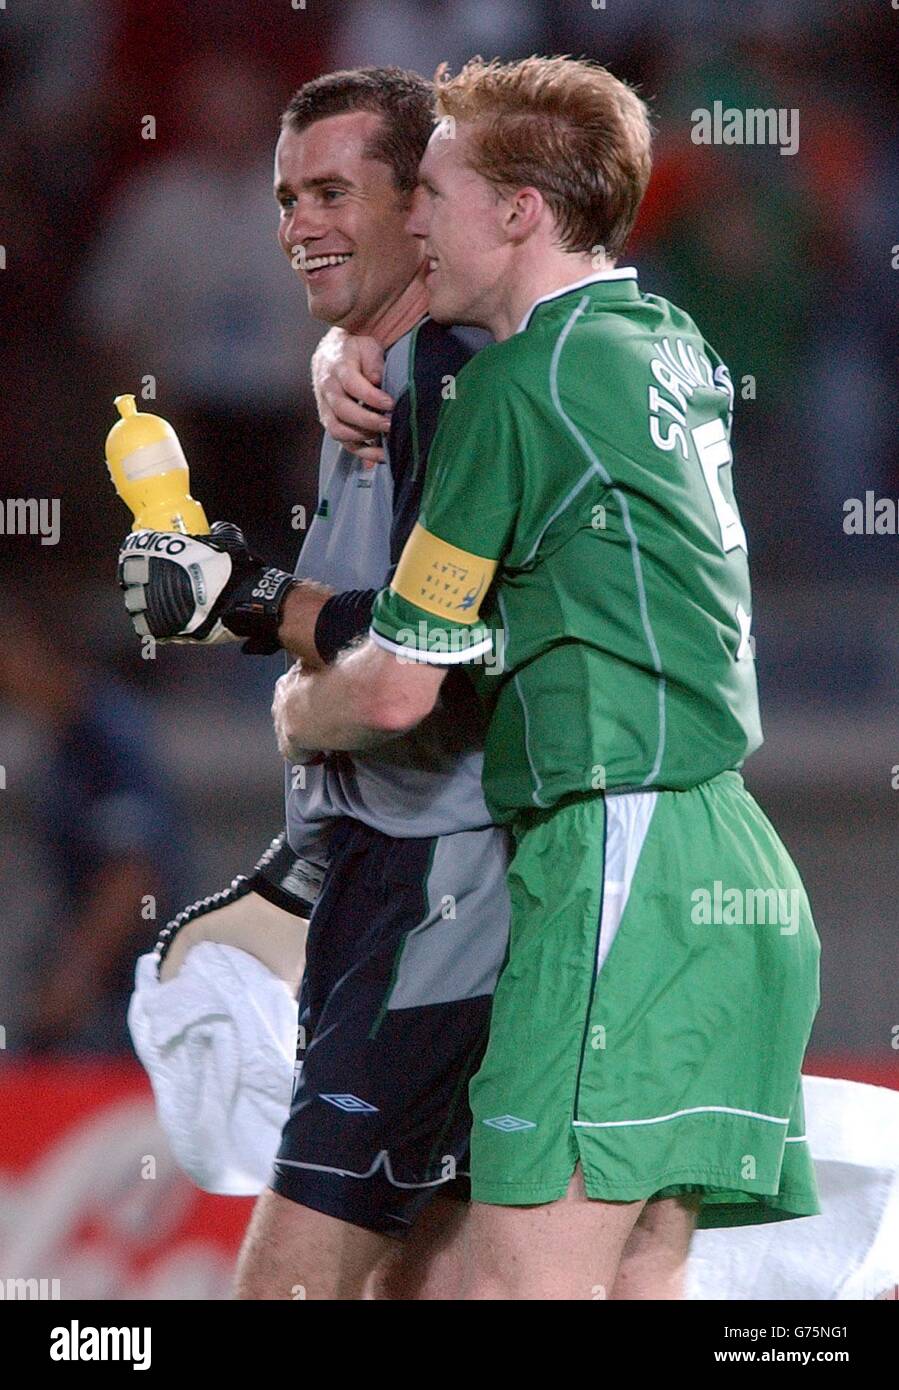 Shay irlandese e Steve Staunton festeggiano, dopo che il loro fianco è progredito agli ultimi 16 della Coppa del mondo battendo l'Arabia Saudita 3-0 a Yokohama, Giappone. Foto Stock